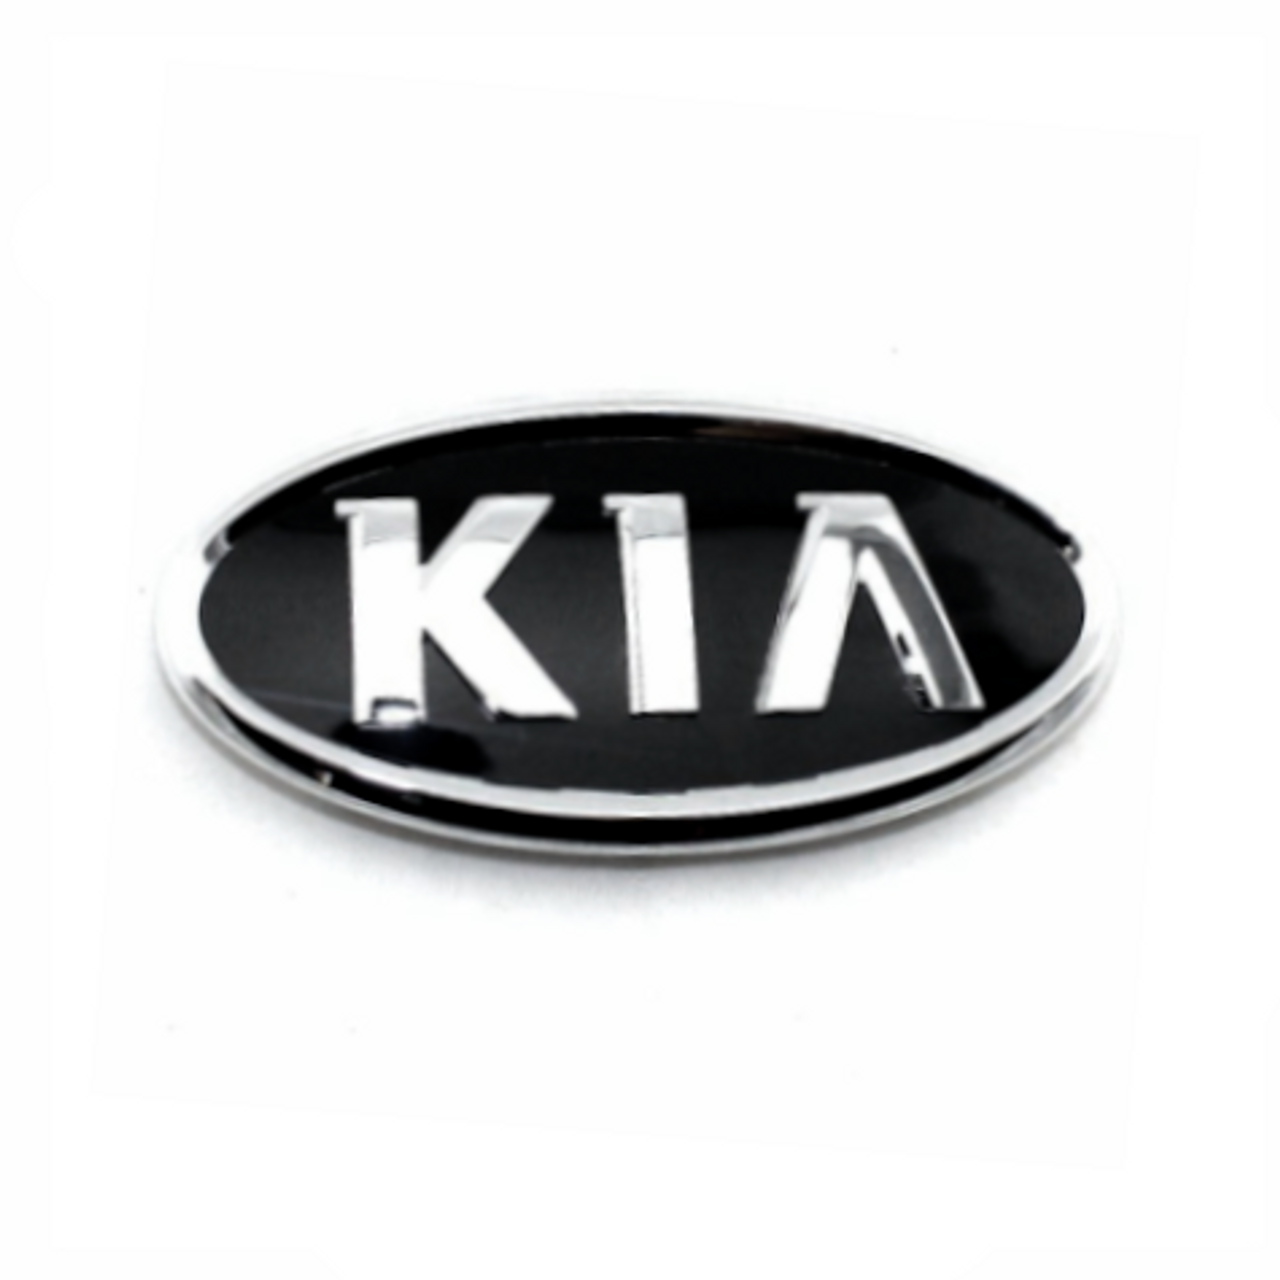 KIA - KIA Emblems - Page 1 - Natalex Auto